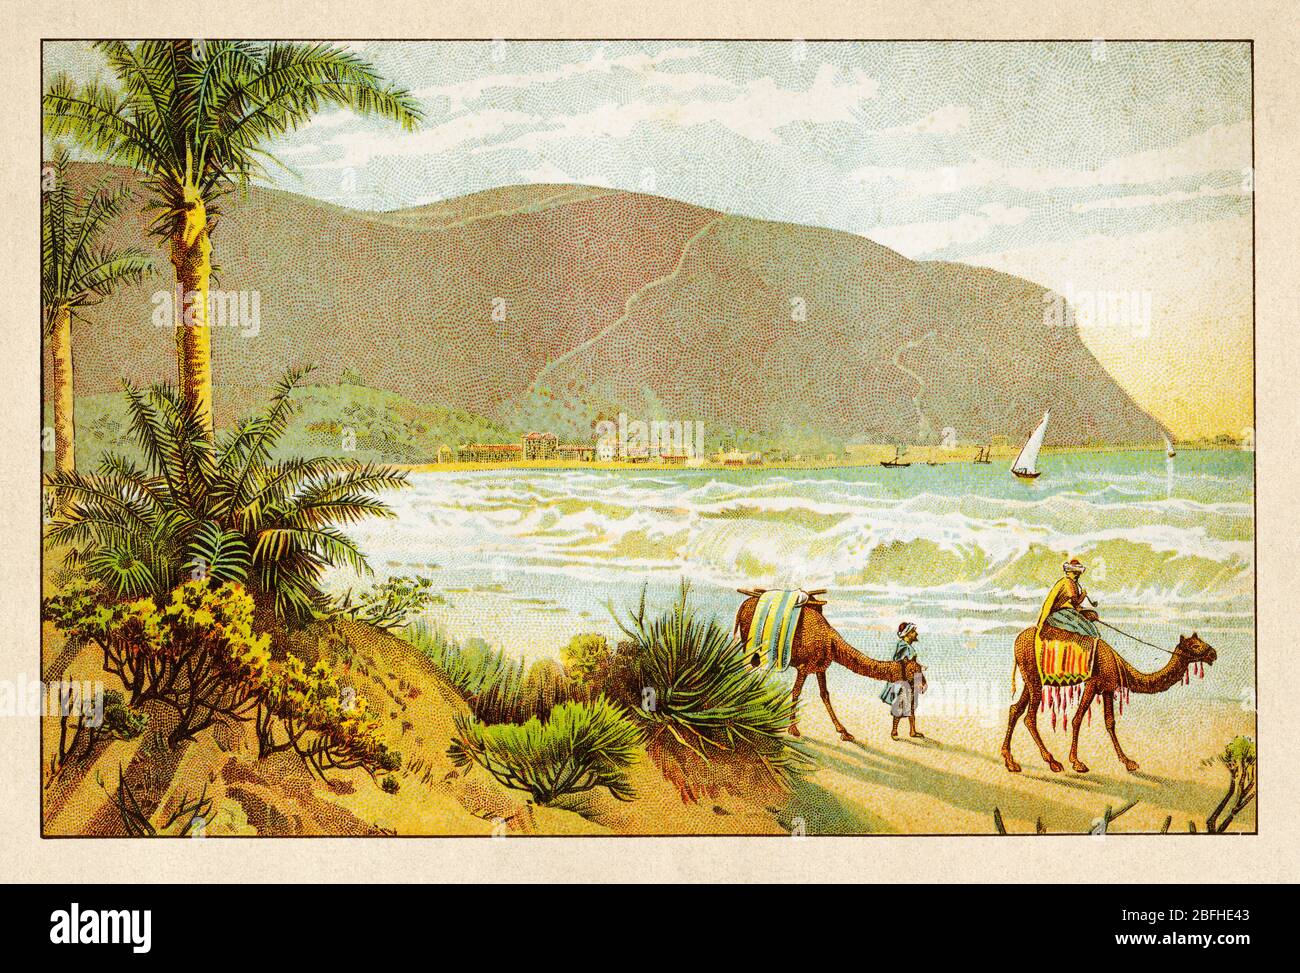 Mont Carmel, chaîne de montagnes côtières dans le nord d'Israël, ancienne chromolithographie de couleur la Terre Sainte 1898 Banque D'Images